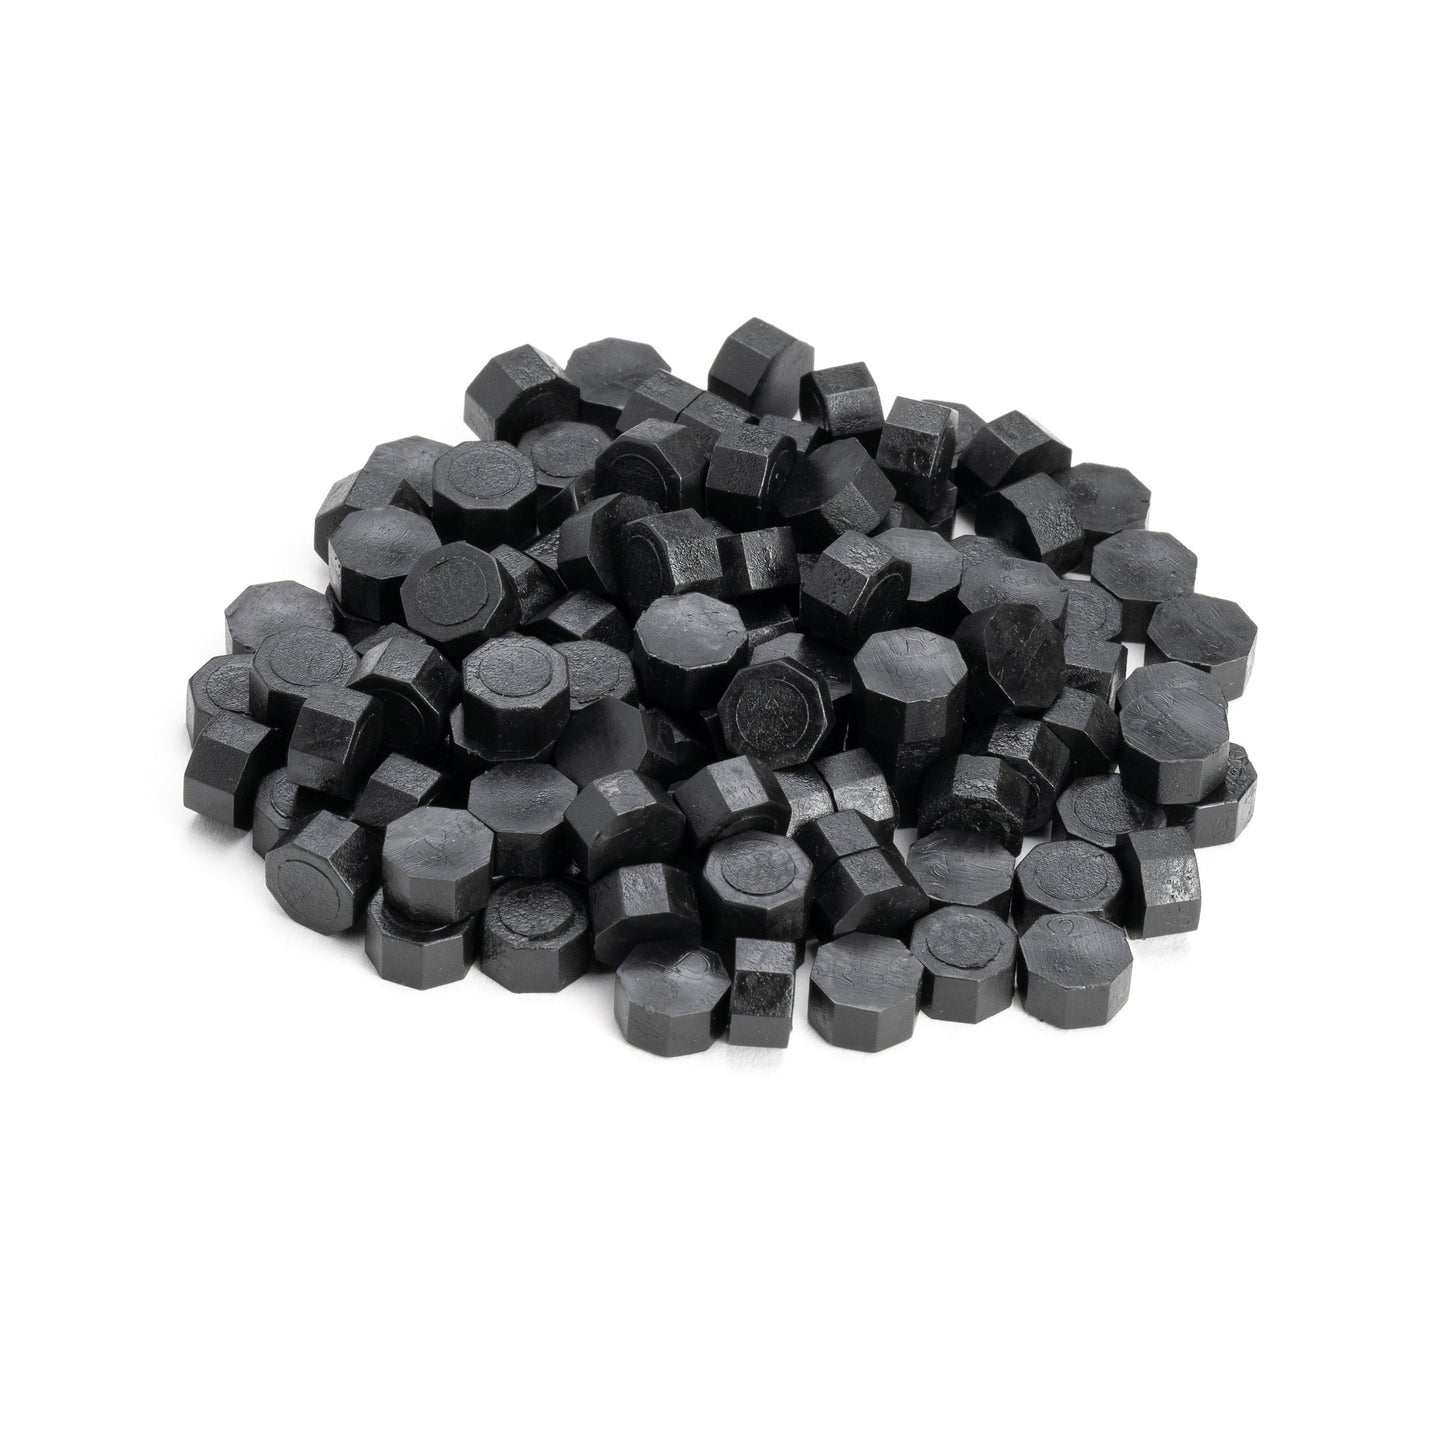 Black Wax Beads Bulk